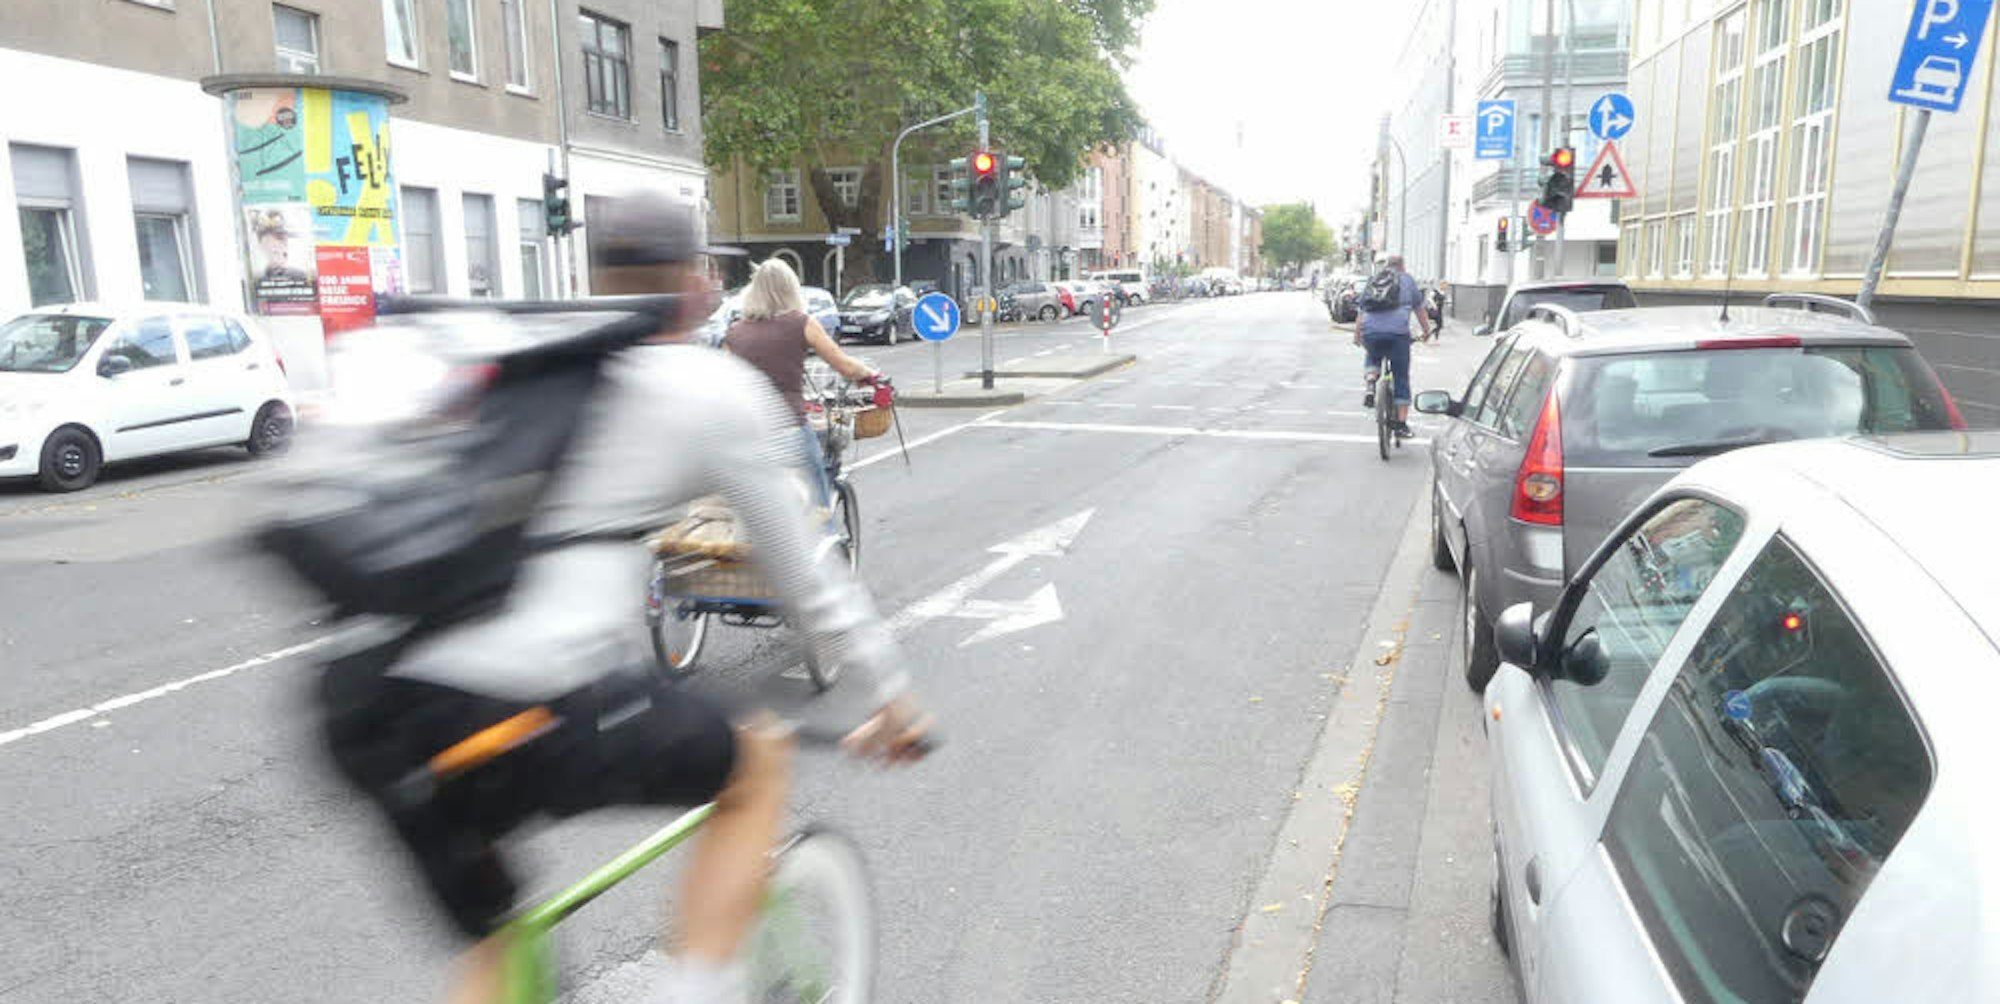 Radfahrer bekommen eigene Fahrspuren auf jeder Straßenseite.